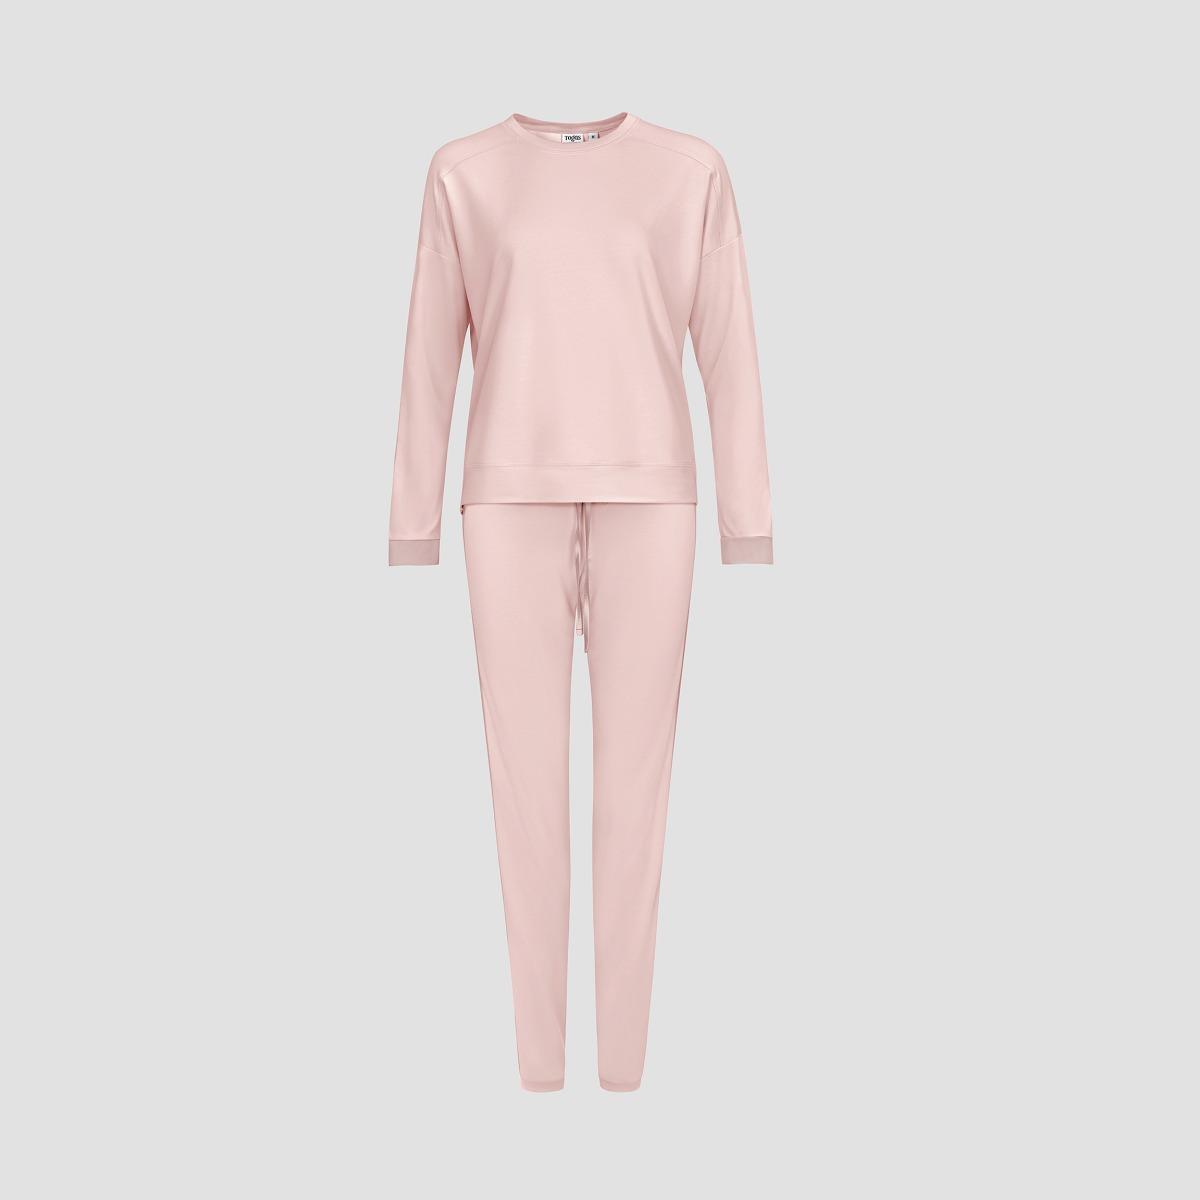 Пижама Togas Рене розовая женская пижама с шортами уют 06